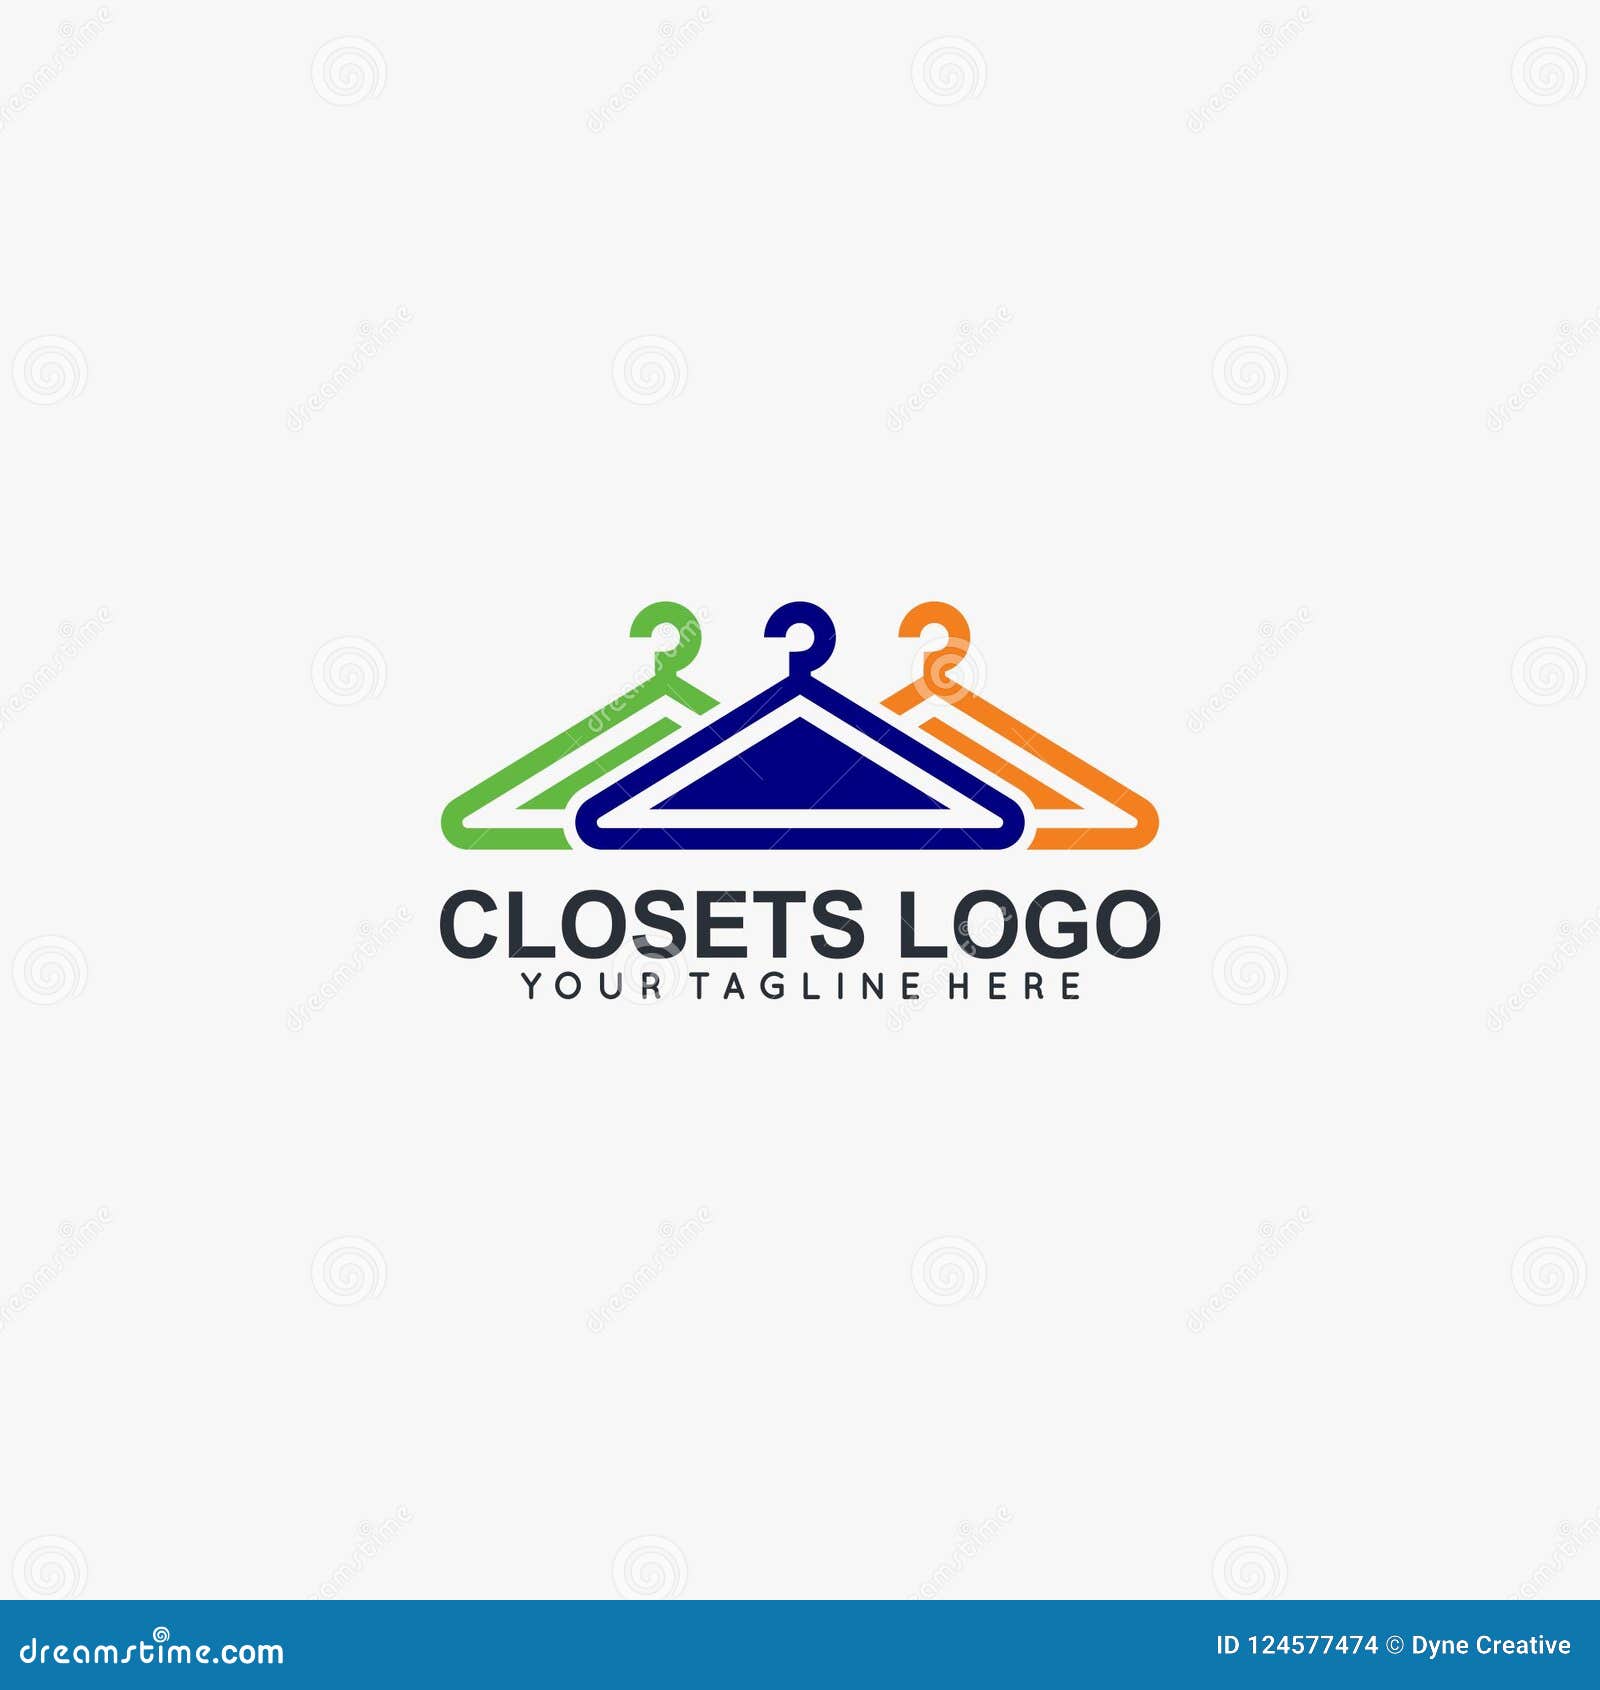 Closet Logo - Free Vectors & PSDs to Download